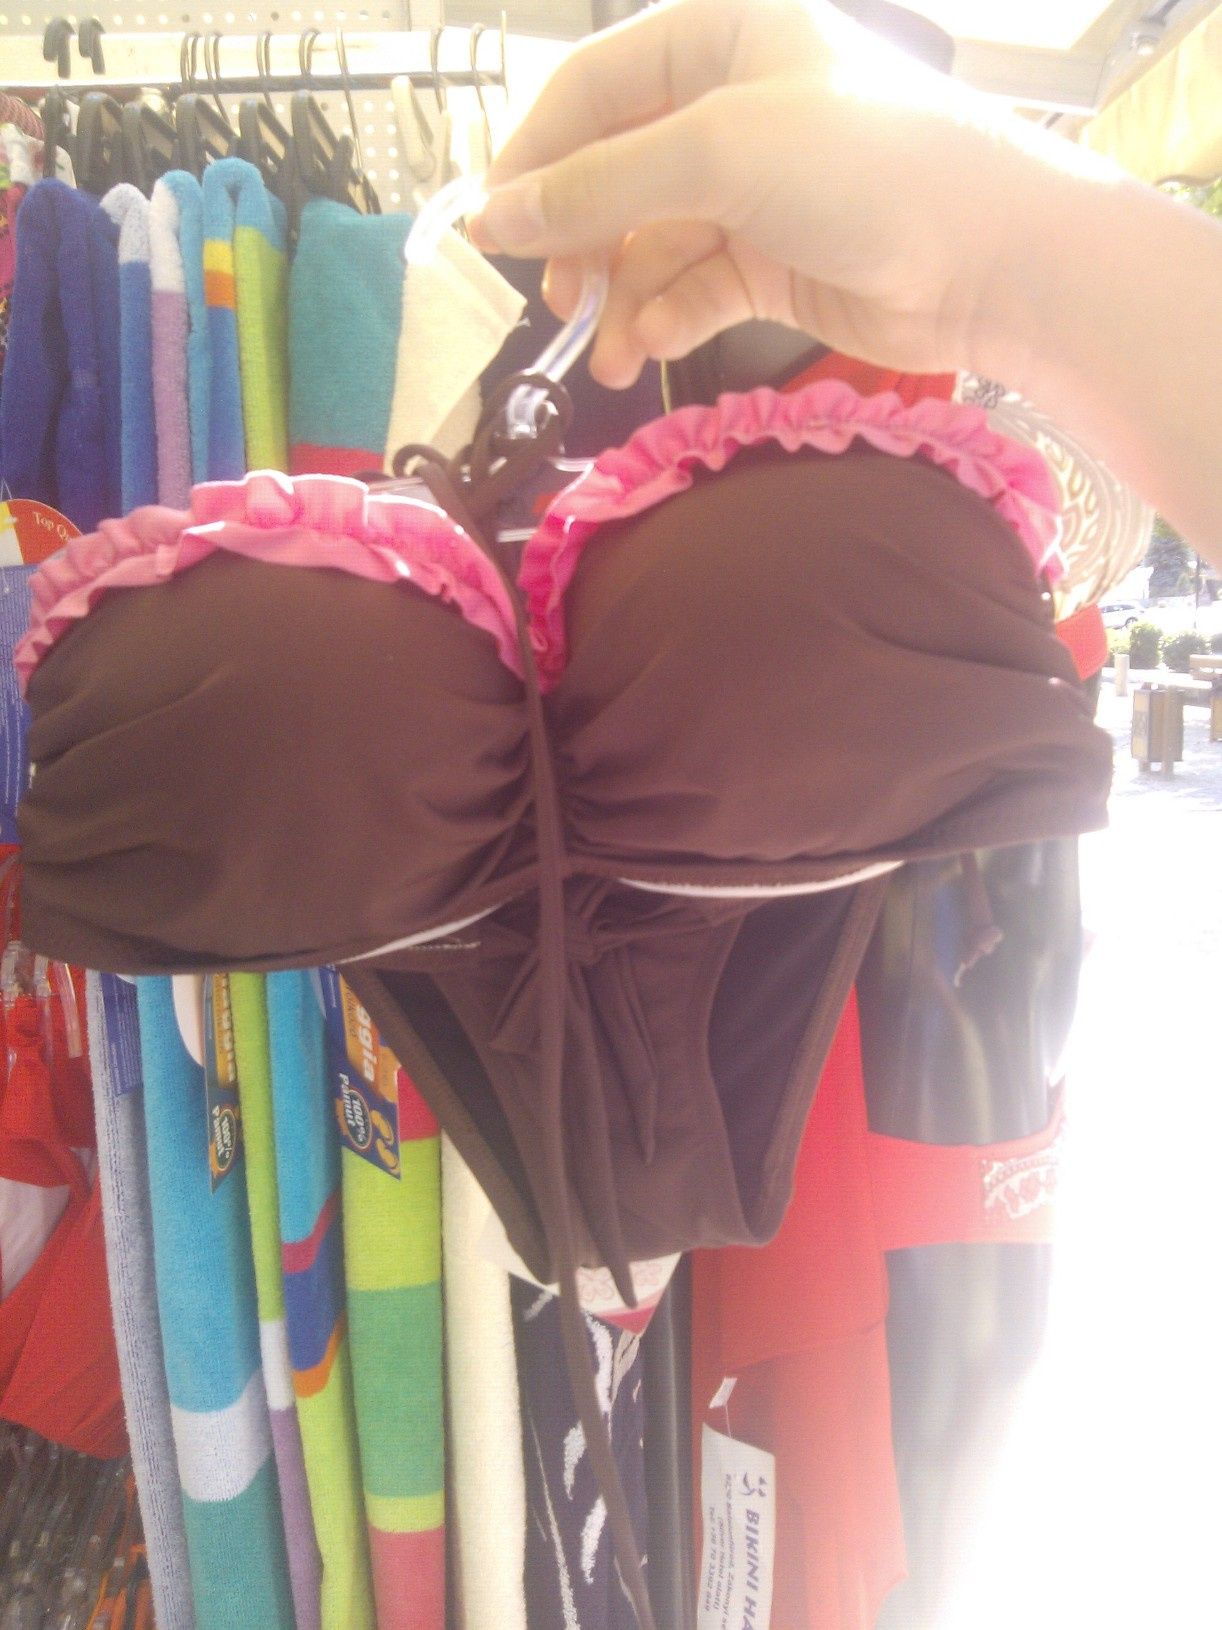 Ha egy egyszerűbb darabot keres, egy kis romantikával, ajánljuk ezt a fodros bikinit. 6000 forintért az öné lehet.